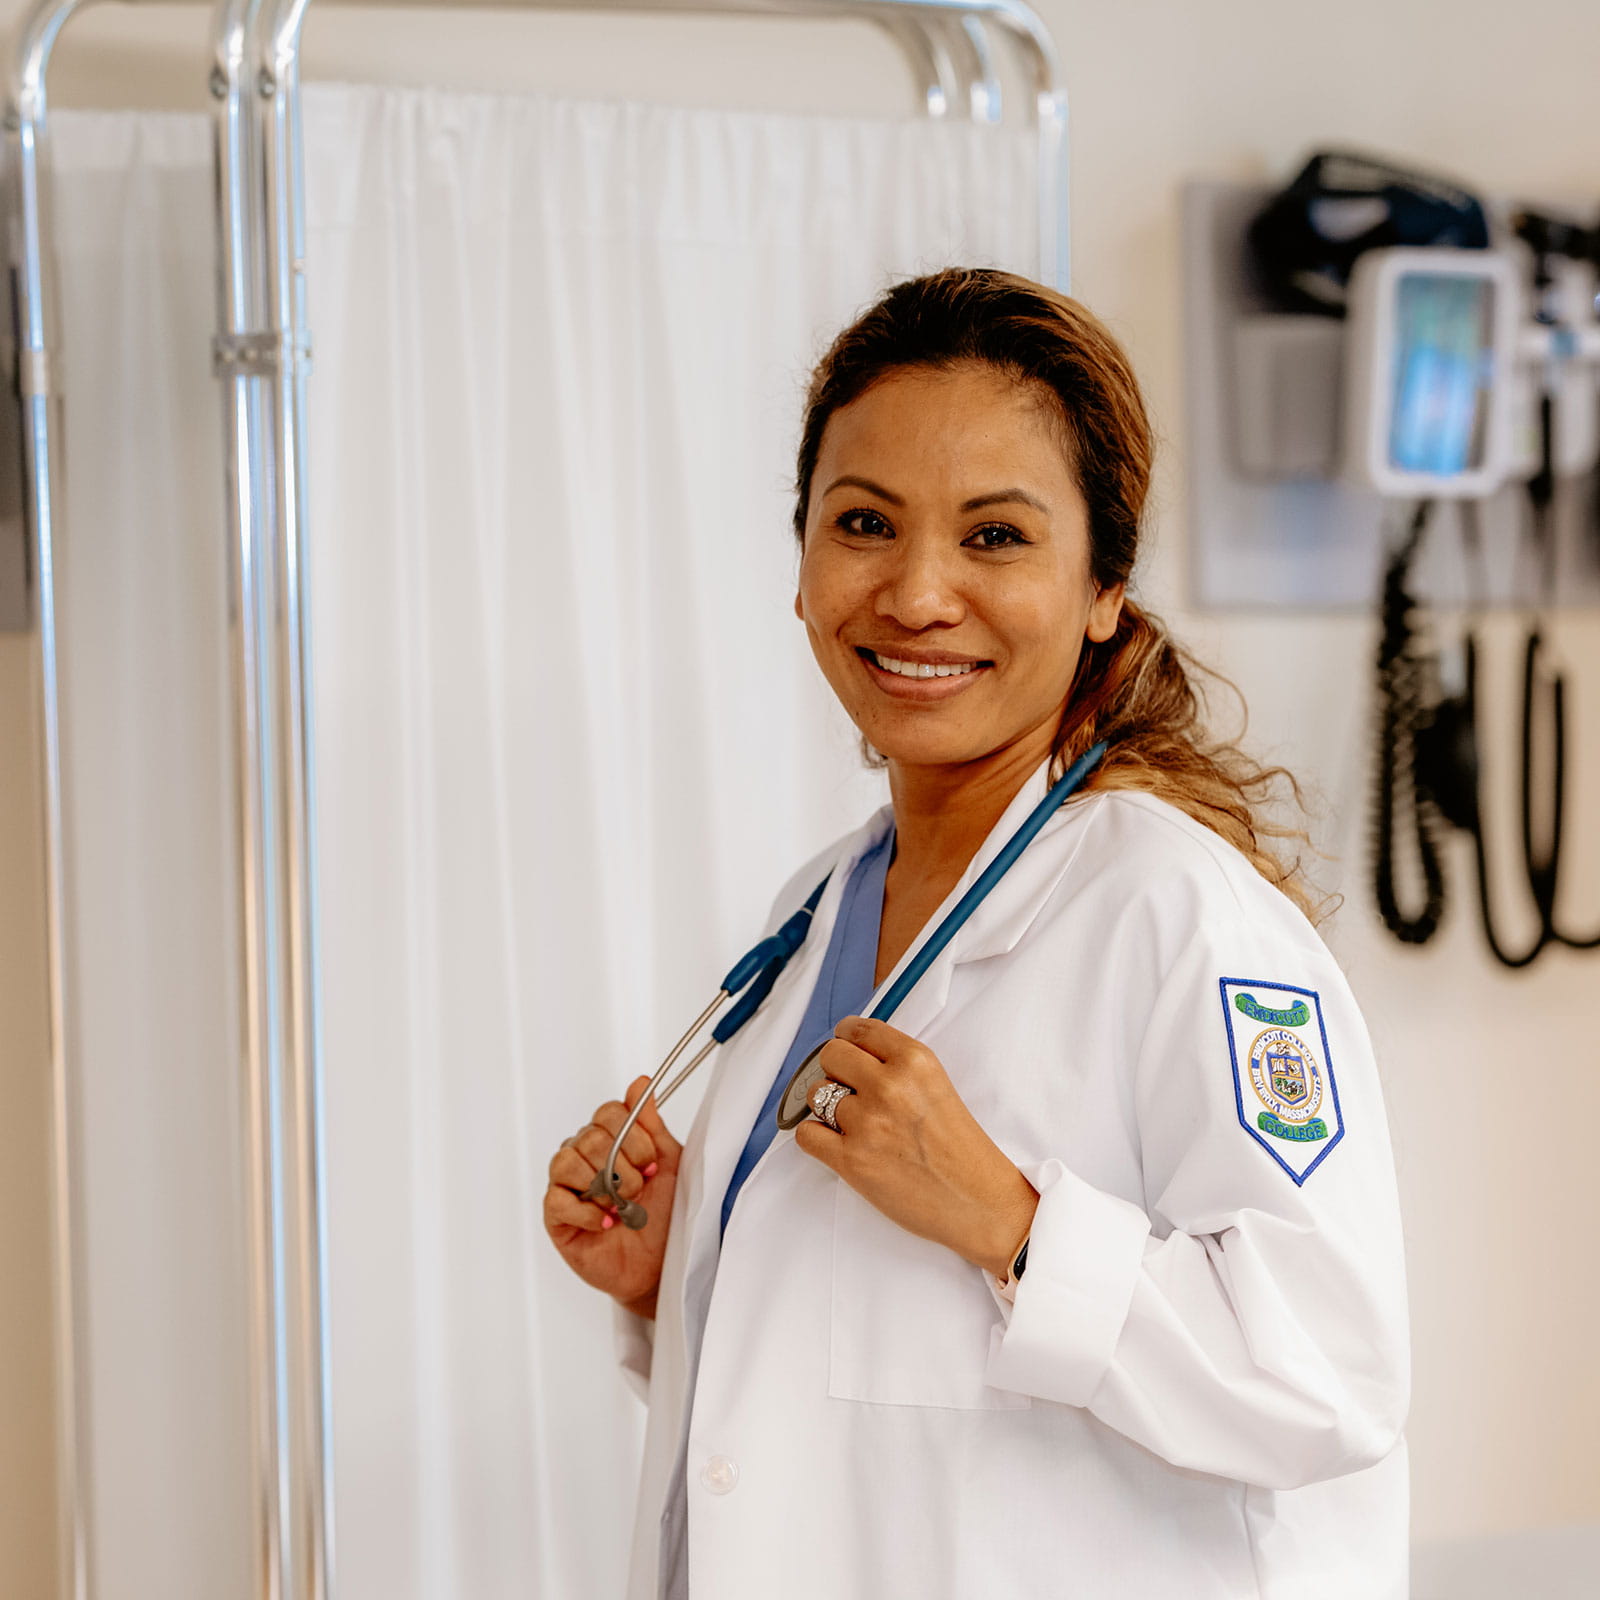 Nurse posing in an evaluation room